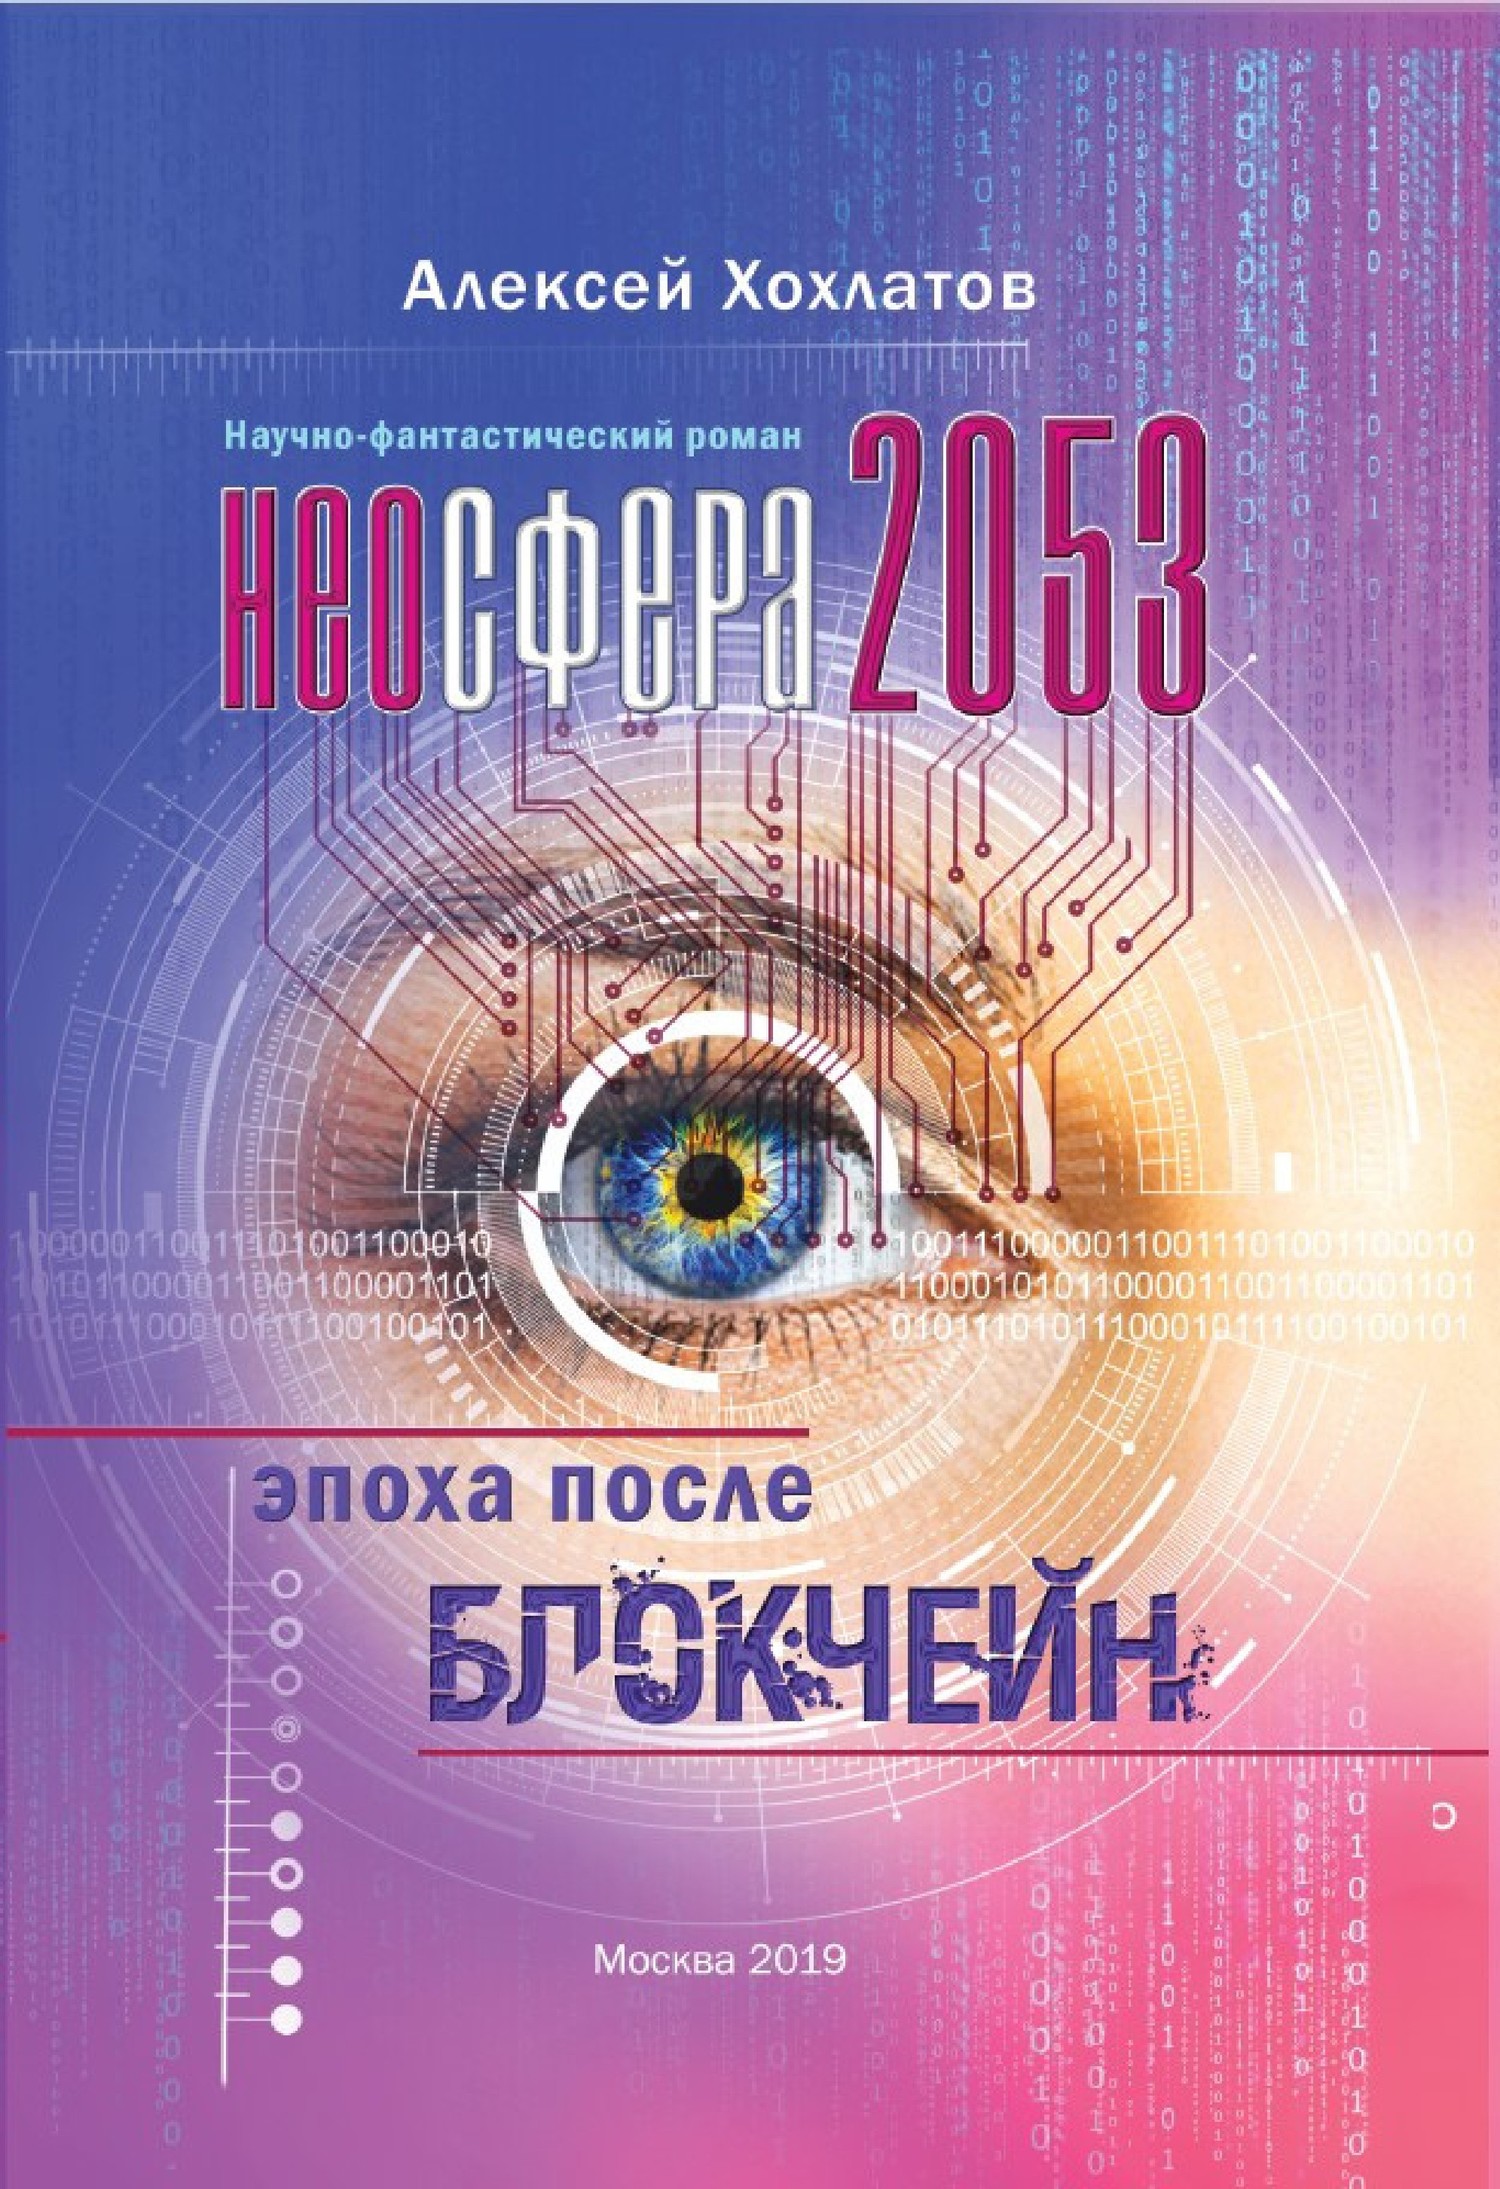 Хохлатов Алексей - Неосфера 2053. Эпоха после блокчейн скачать бесплатно